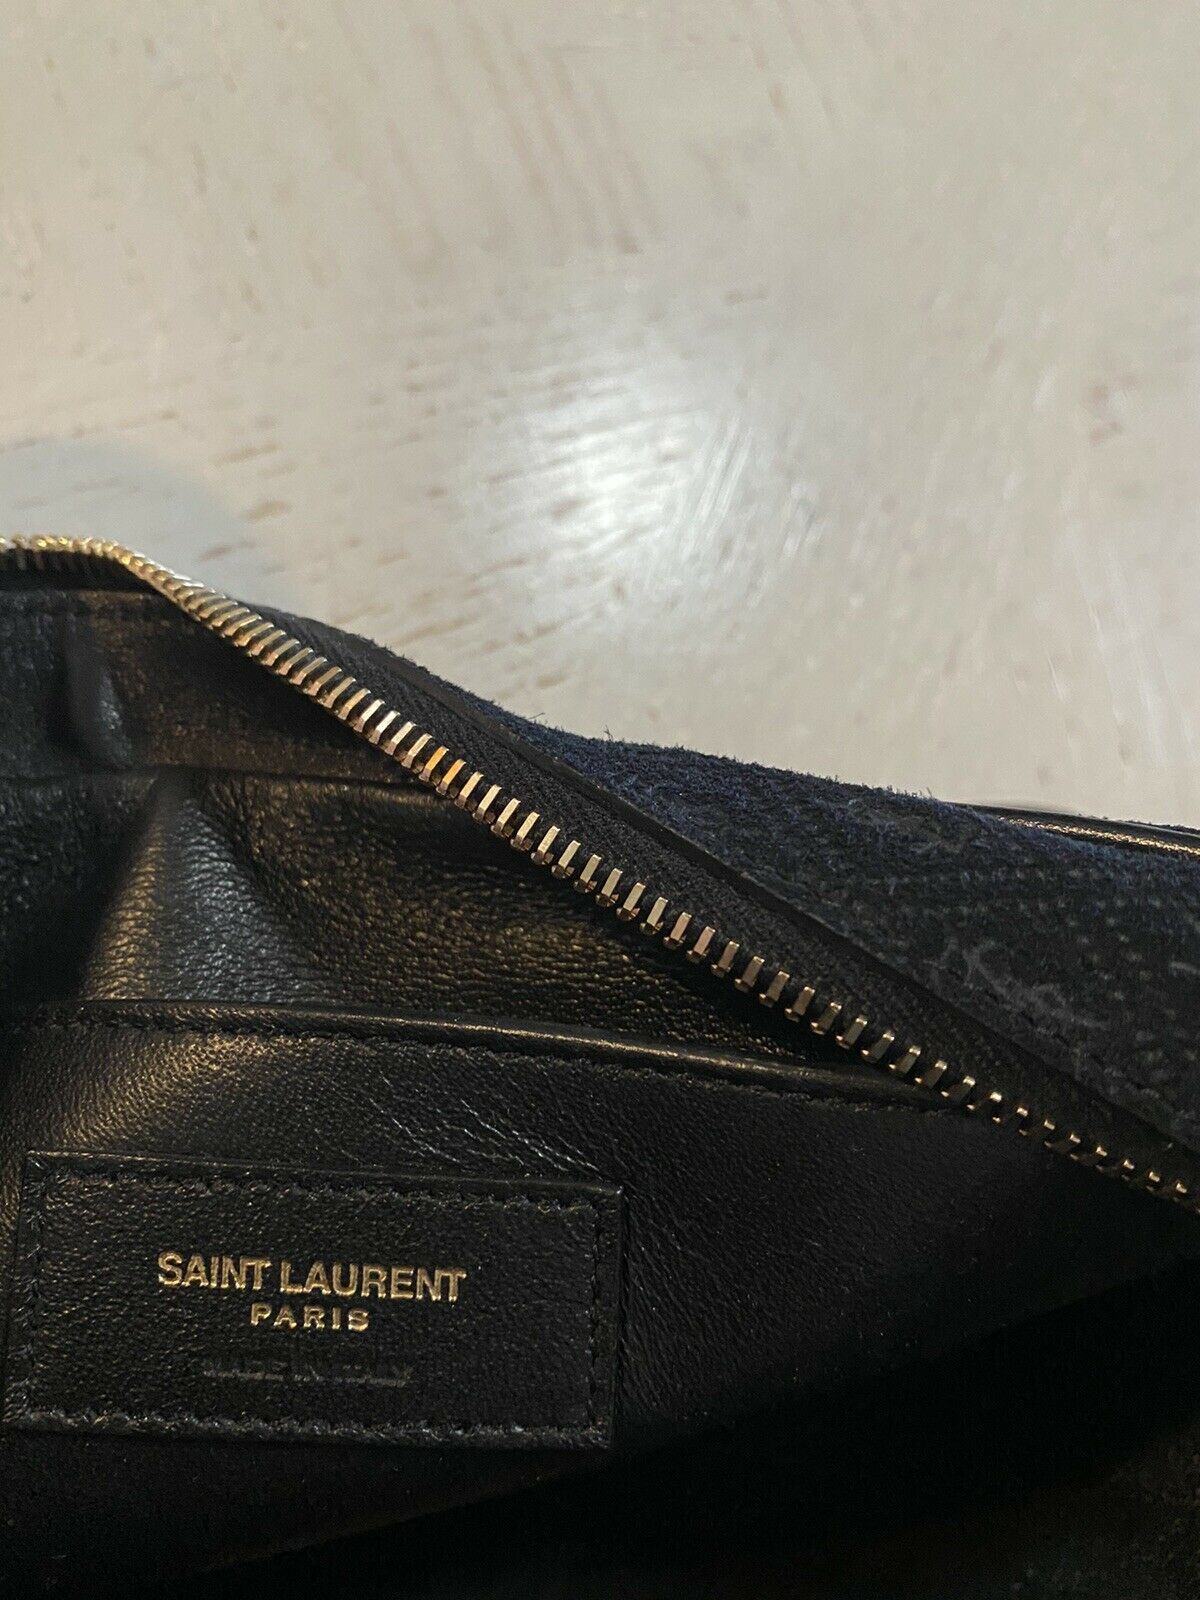 New $1850 Saint Laurent Leather/Suede YSL Crossbody Shoulder Bag Black 568608